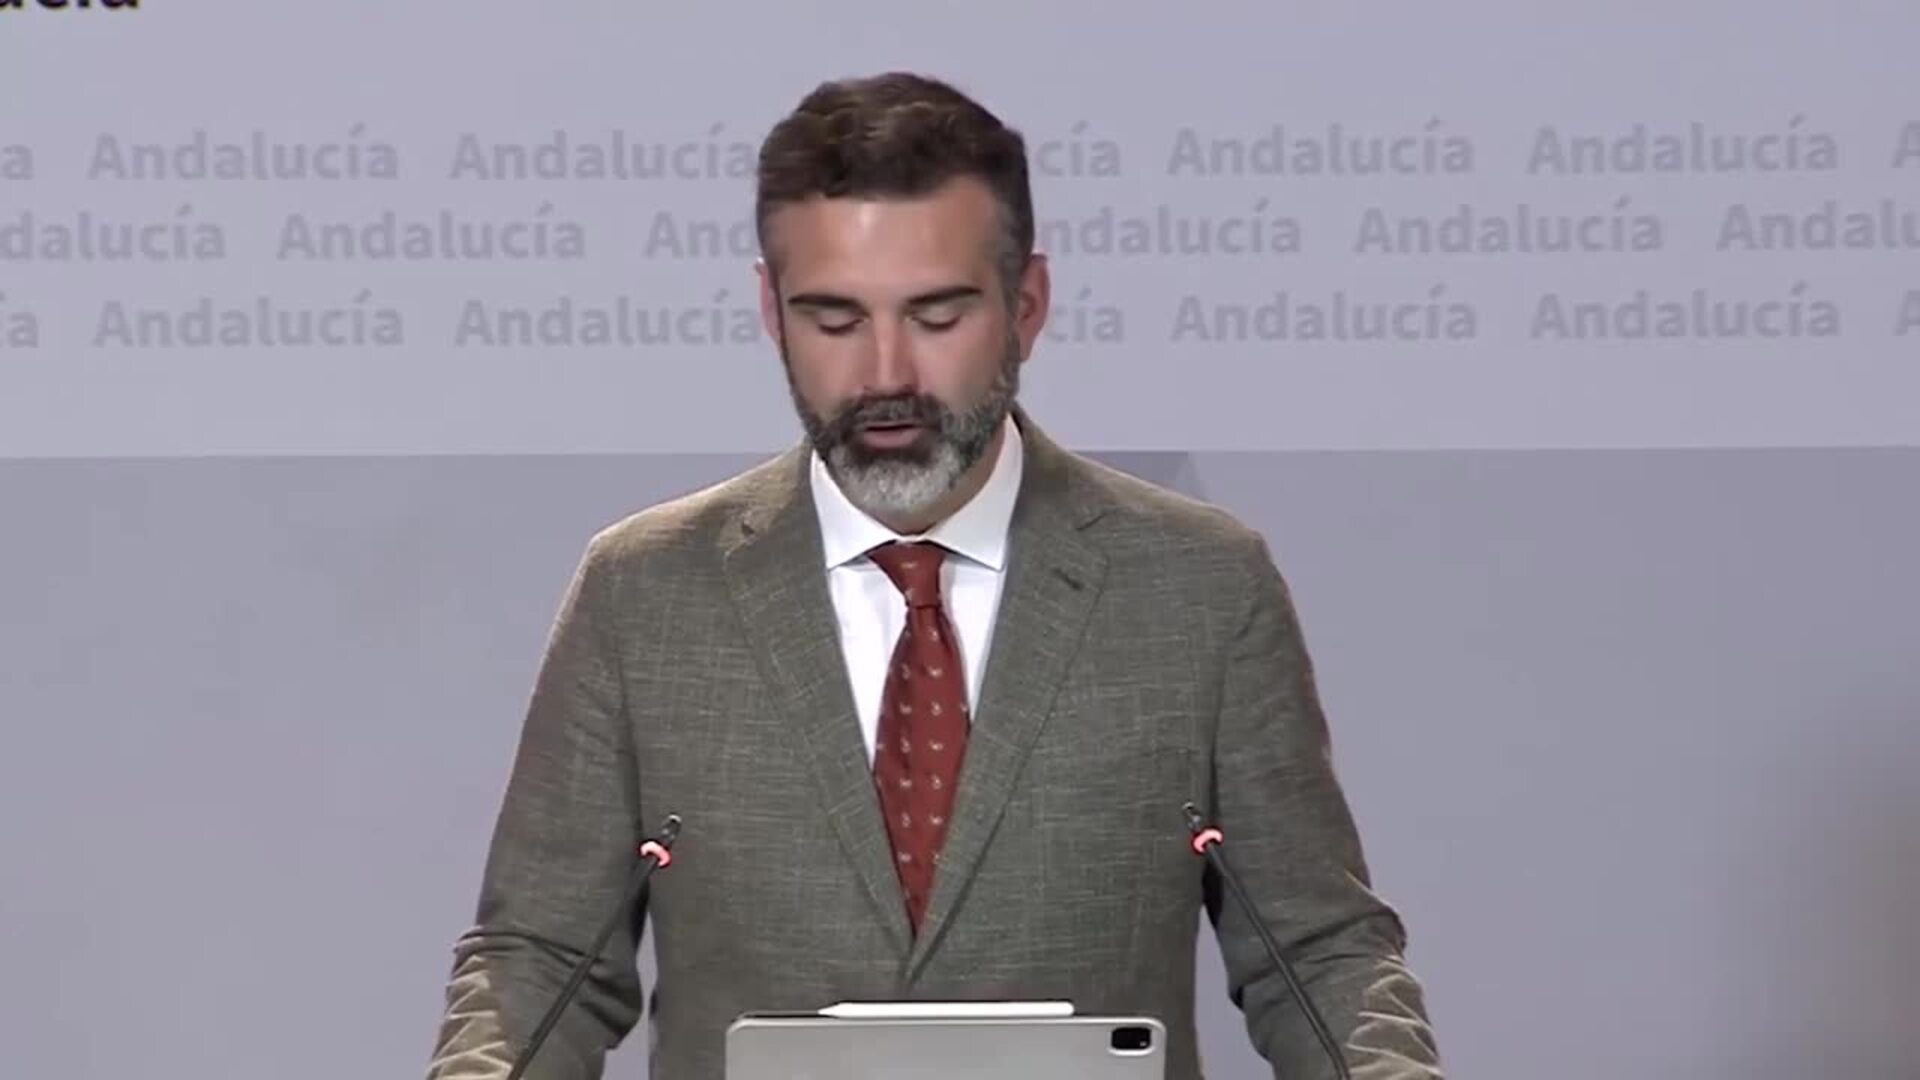 Andalucía reivindica el encuentro Moreno-Page como símbolo para alcanzar acuerdos